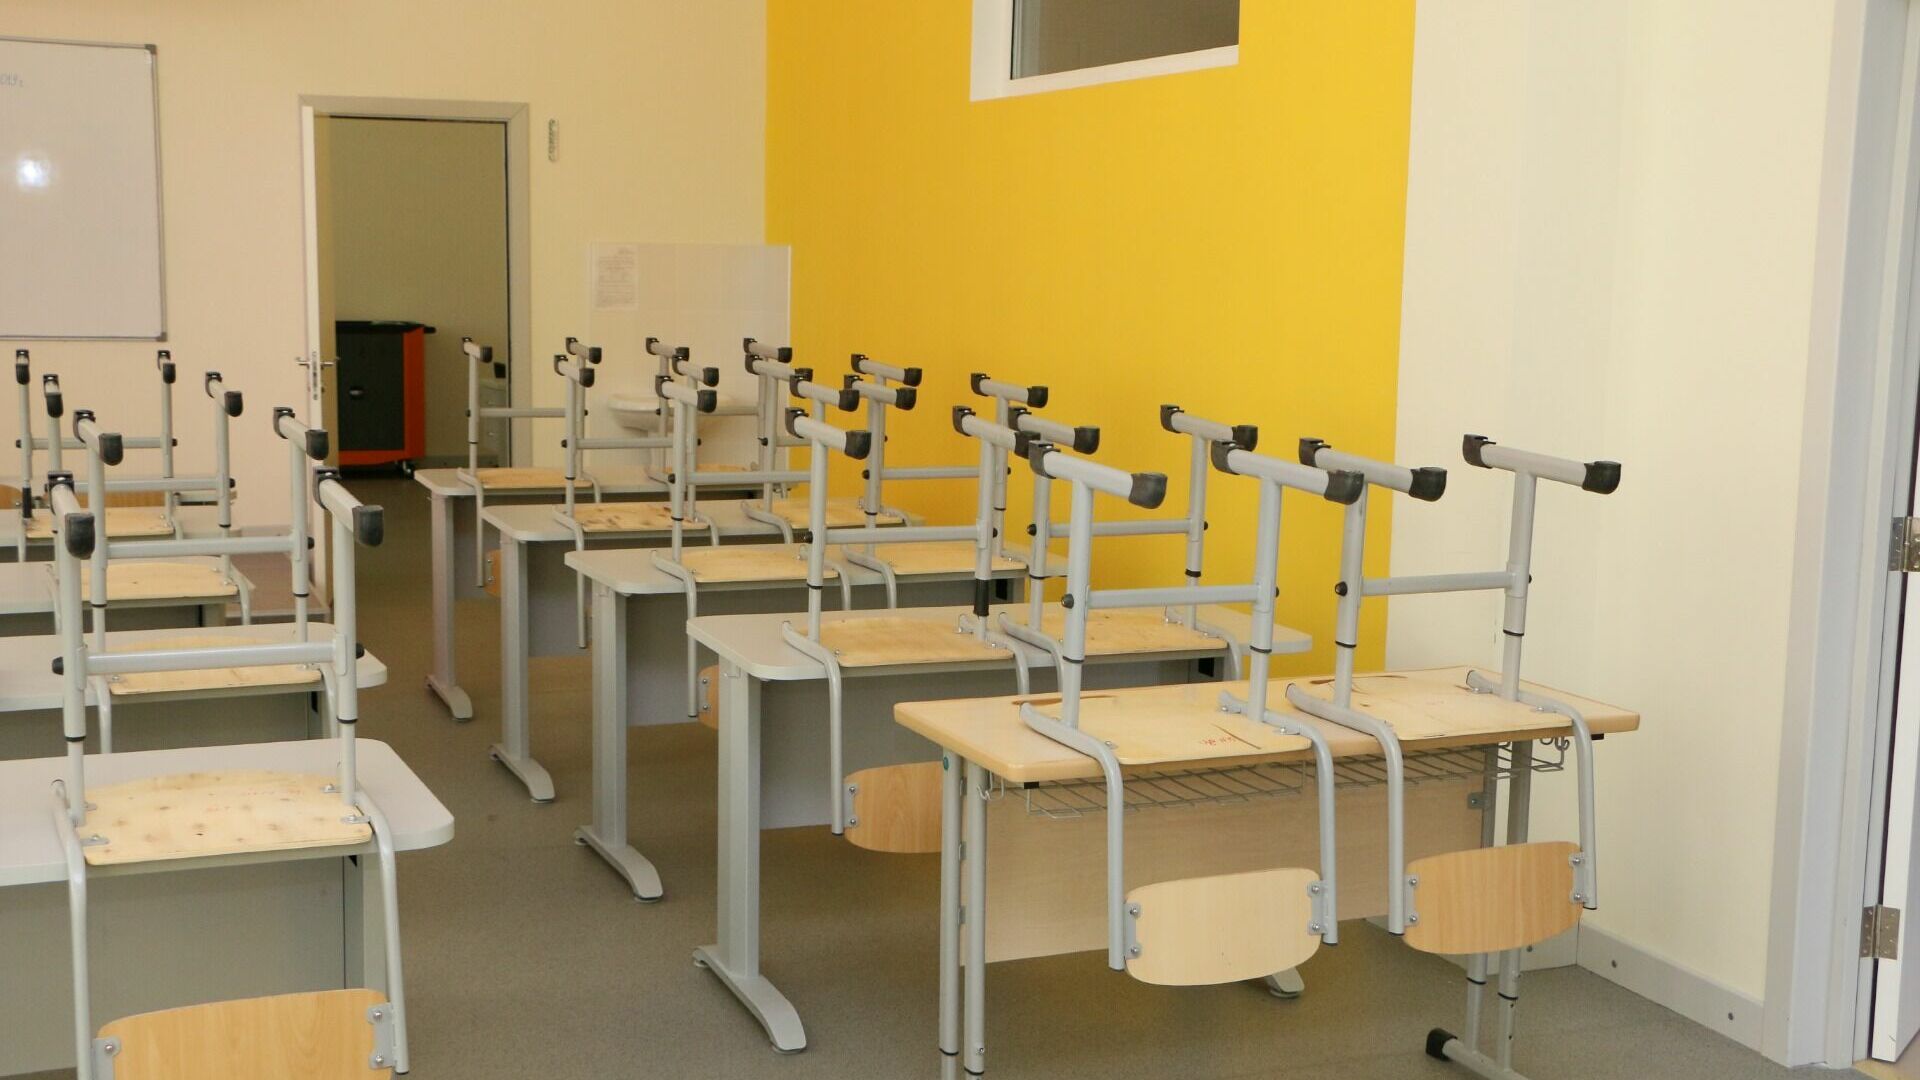 Парты и стулья за 778 тысяч рублей появятся в двух школах Нижнего Тагила